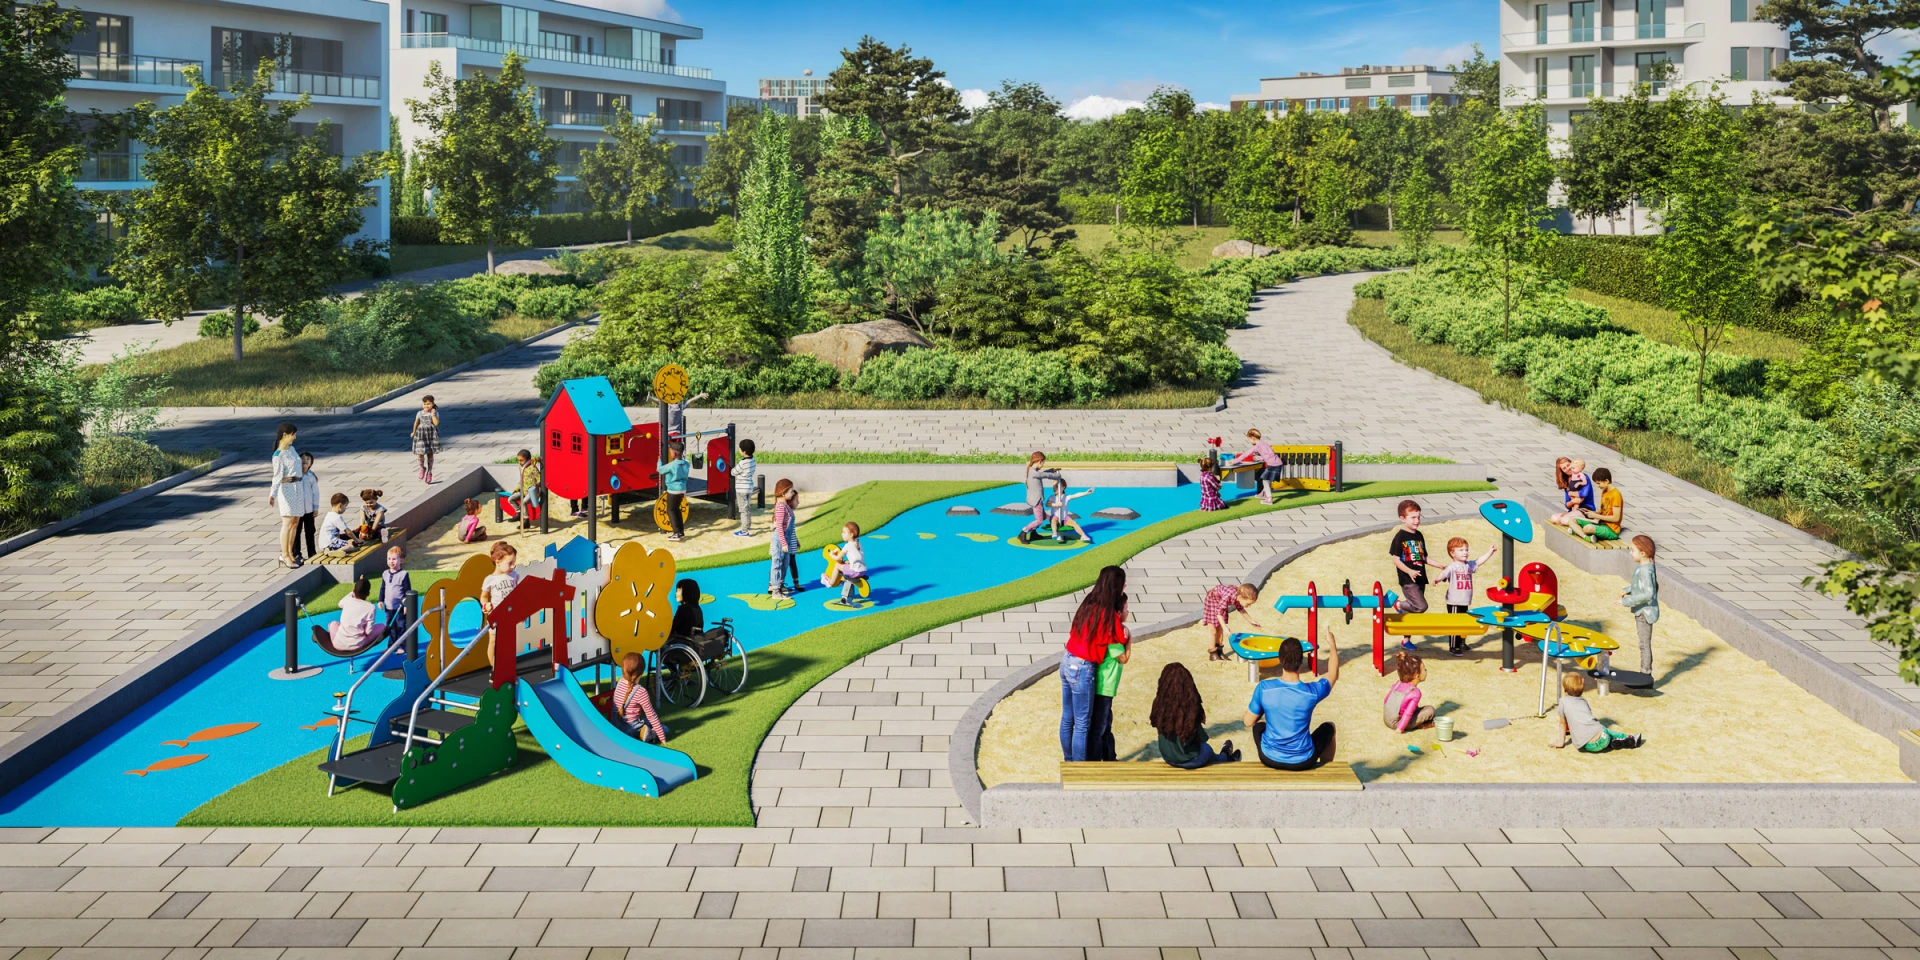 Design-Lösung eines Spielplatzes für Kleinkinder in einem Wohngebiet